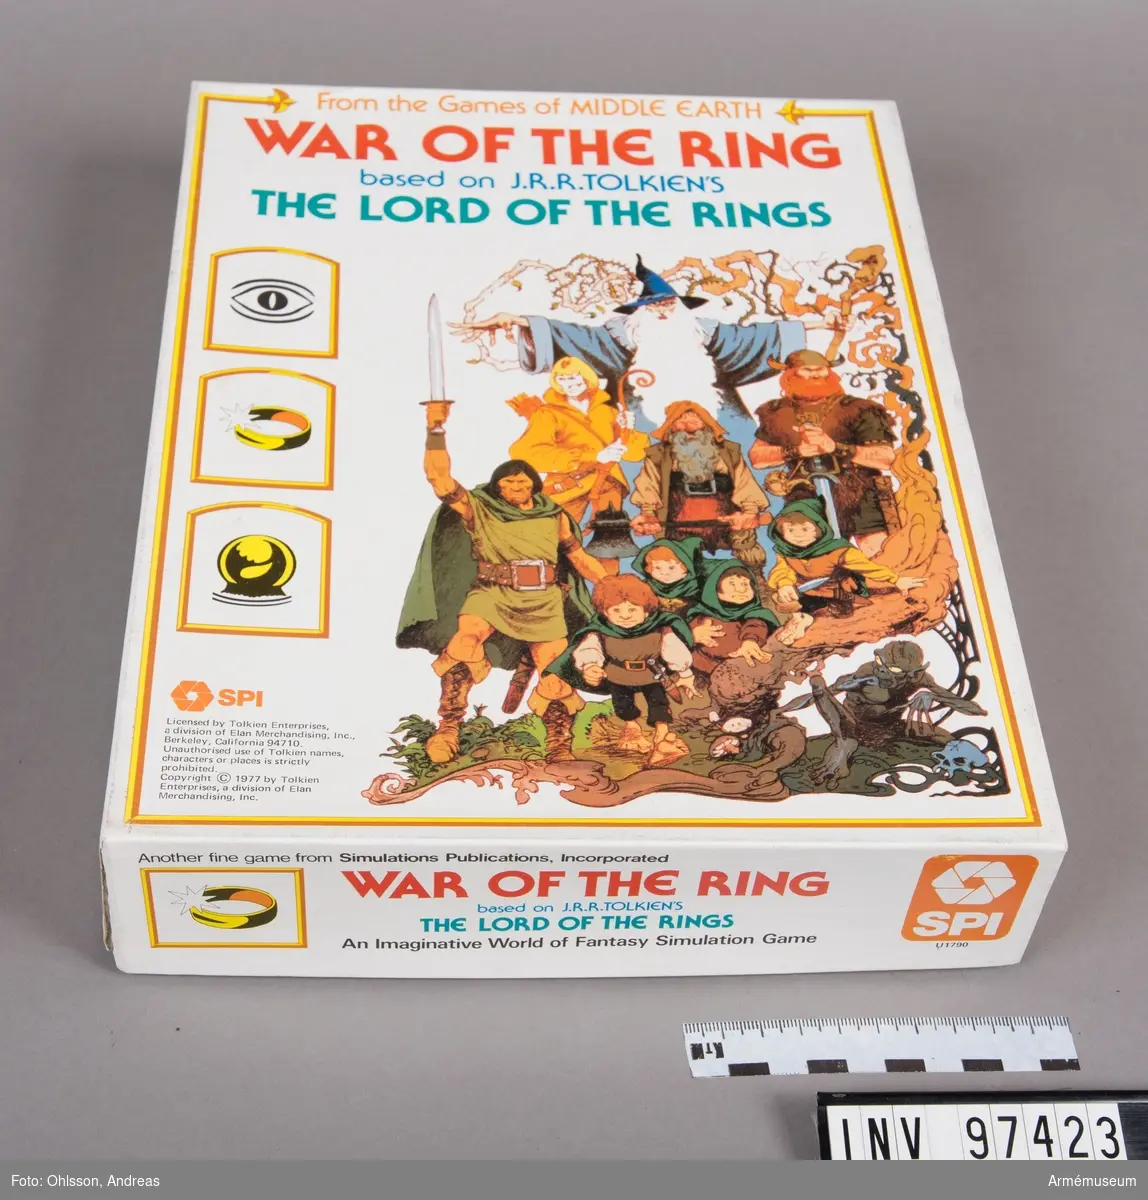 Spelet består av en spelplan i två delar som föreställer en karta över JRR Tolkiens fiktiva värld indelad i hexagoner, ett tråg med 20 sektioner, en tärning, två kartor med sammanlagt cirka 400 löstagbara spelmarkeringar i brunt, rött, vitt, blått, grönt och rött,  cirka 100 spelkort med varierande text och motiv, samt häften och lösa blad med spelinstruktioner och tabeller. I kartongen finns även ett kuvert märkt "Gondor & Sauron" med ytterligare spelhäften, kartor och tabeller. Spelet har två nivåer, där den ena utgörs av de övergripande krigshändelserna och den andra av sagofigurernas parallellt pågående äventyr.